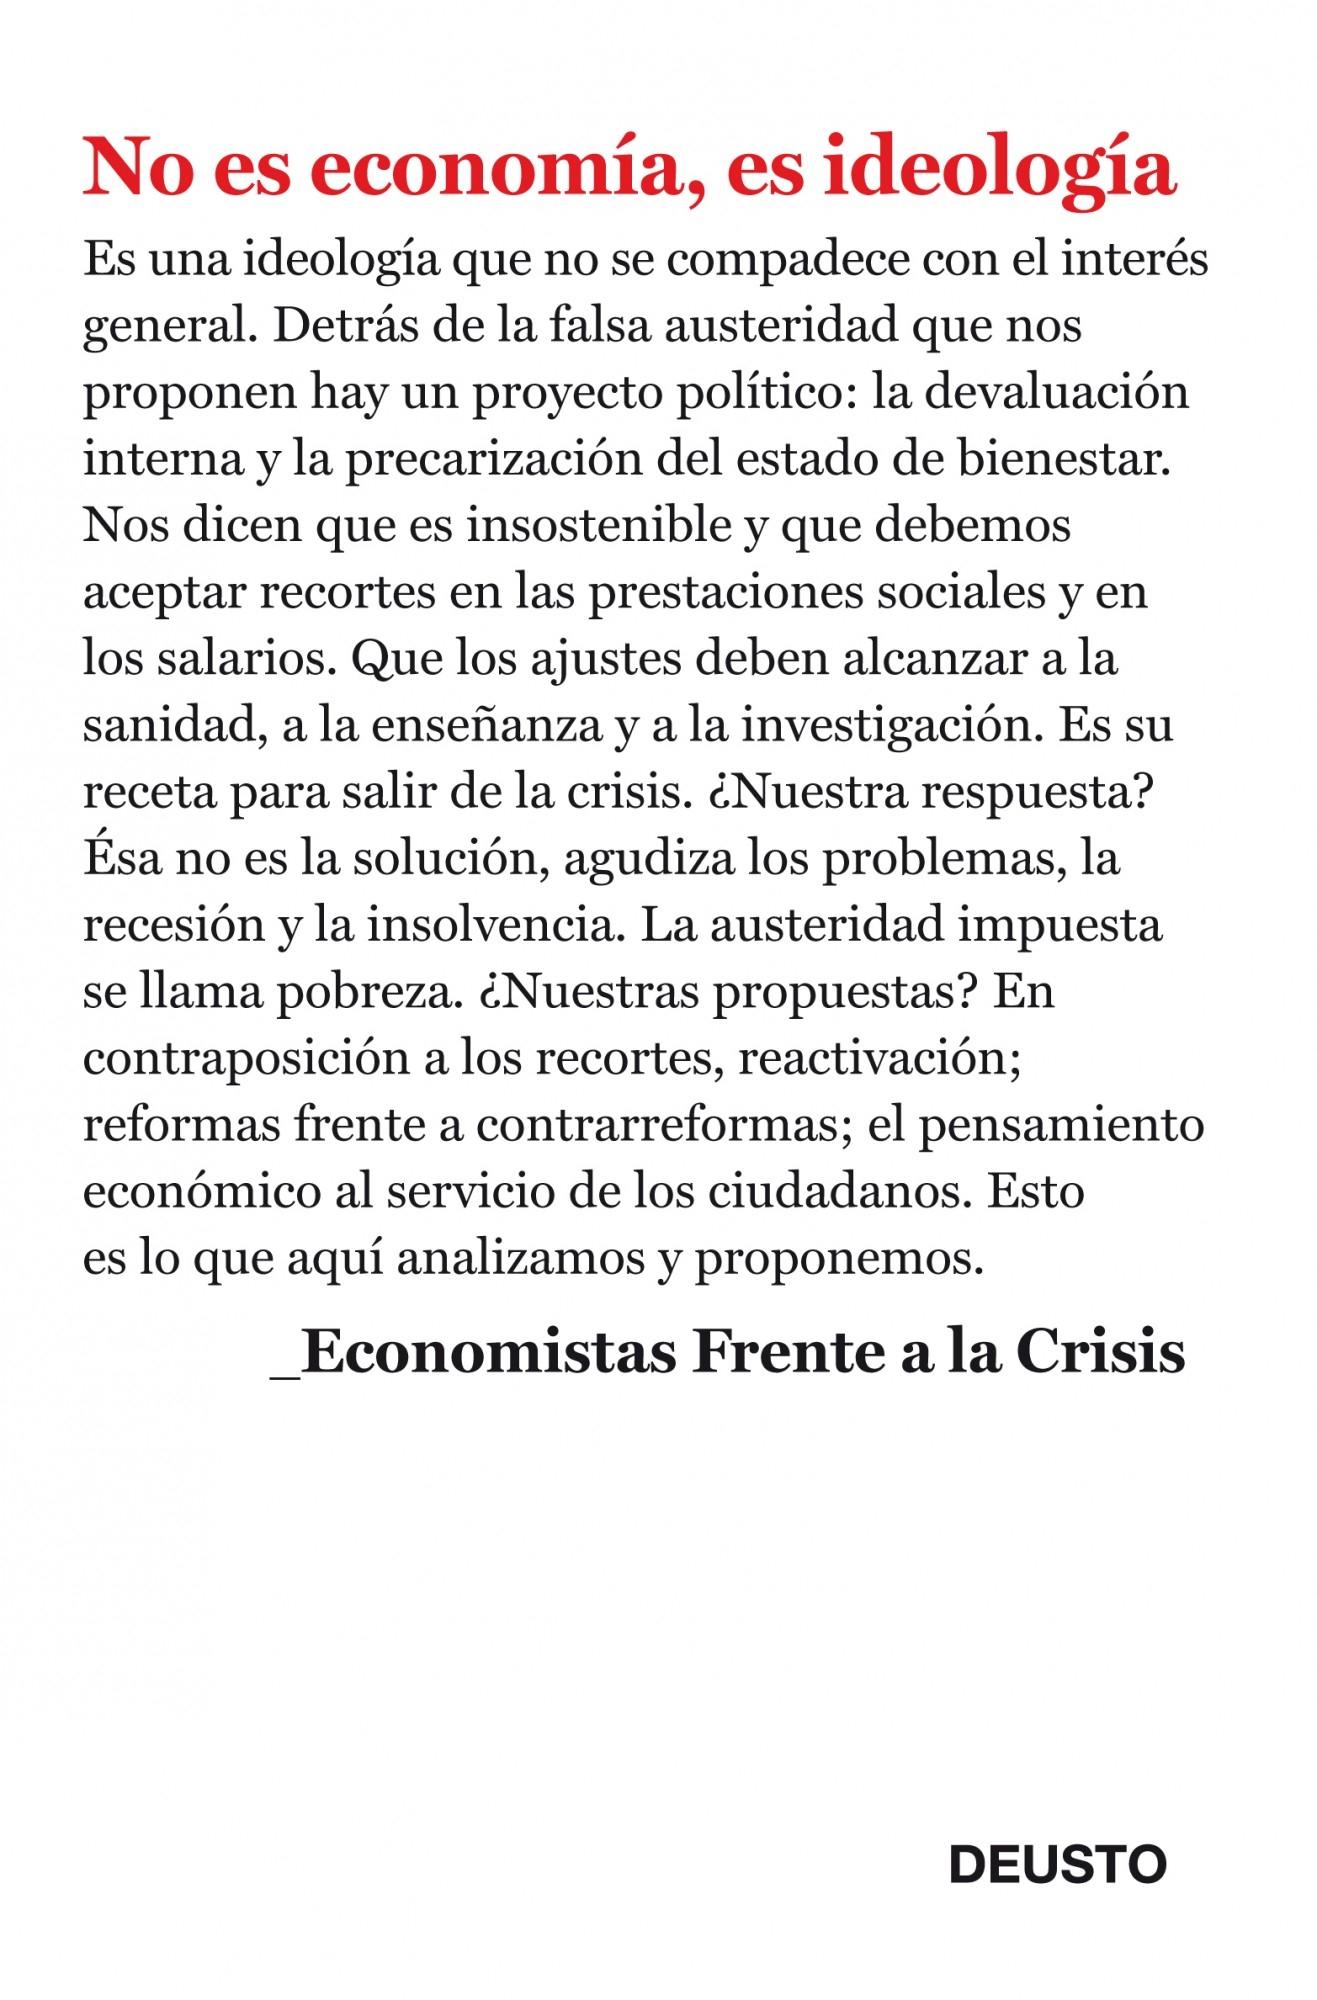 NO ES ECONOMIA, ES IDEOLOGIA. "ECONOMISTAS FRENTE A LA CRISIS". 